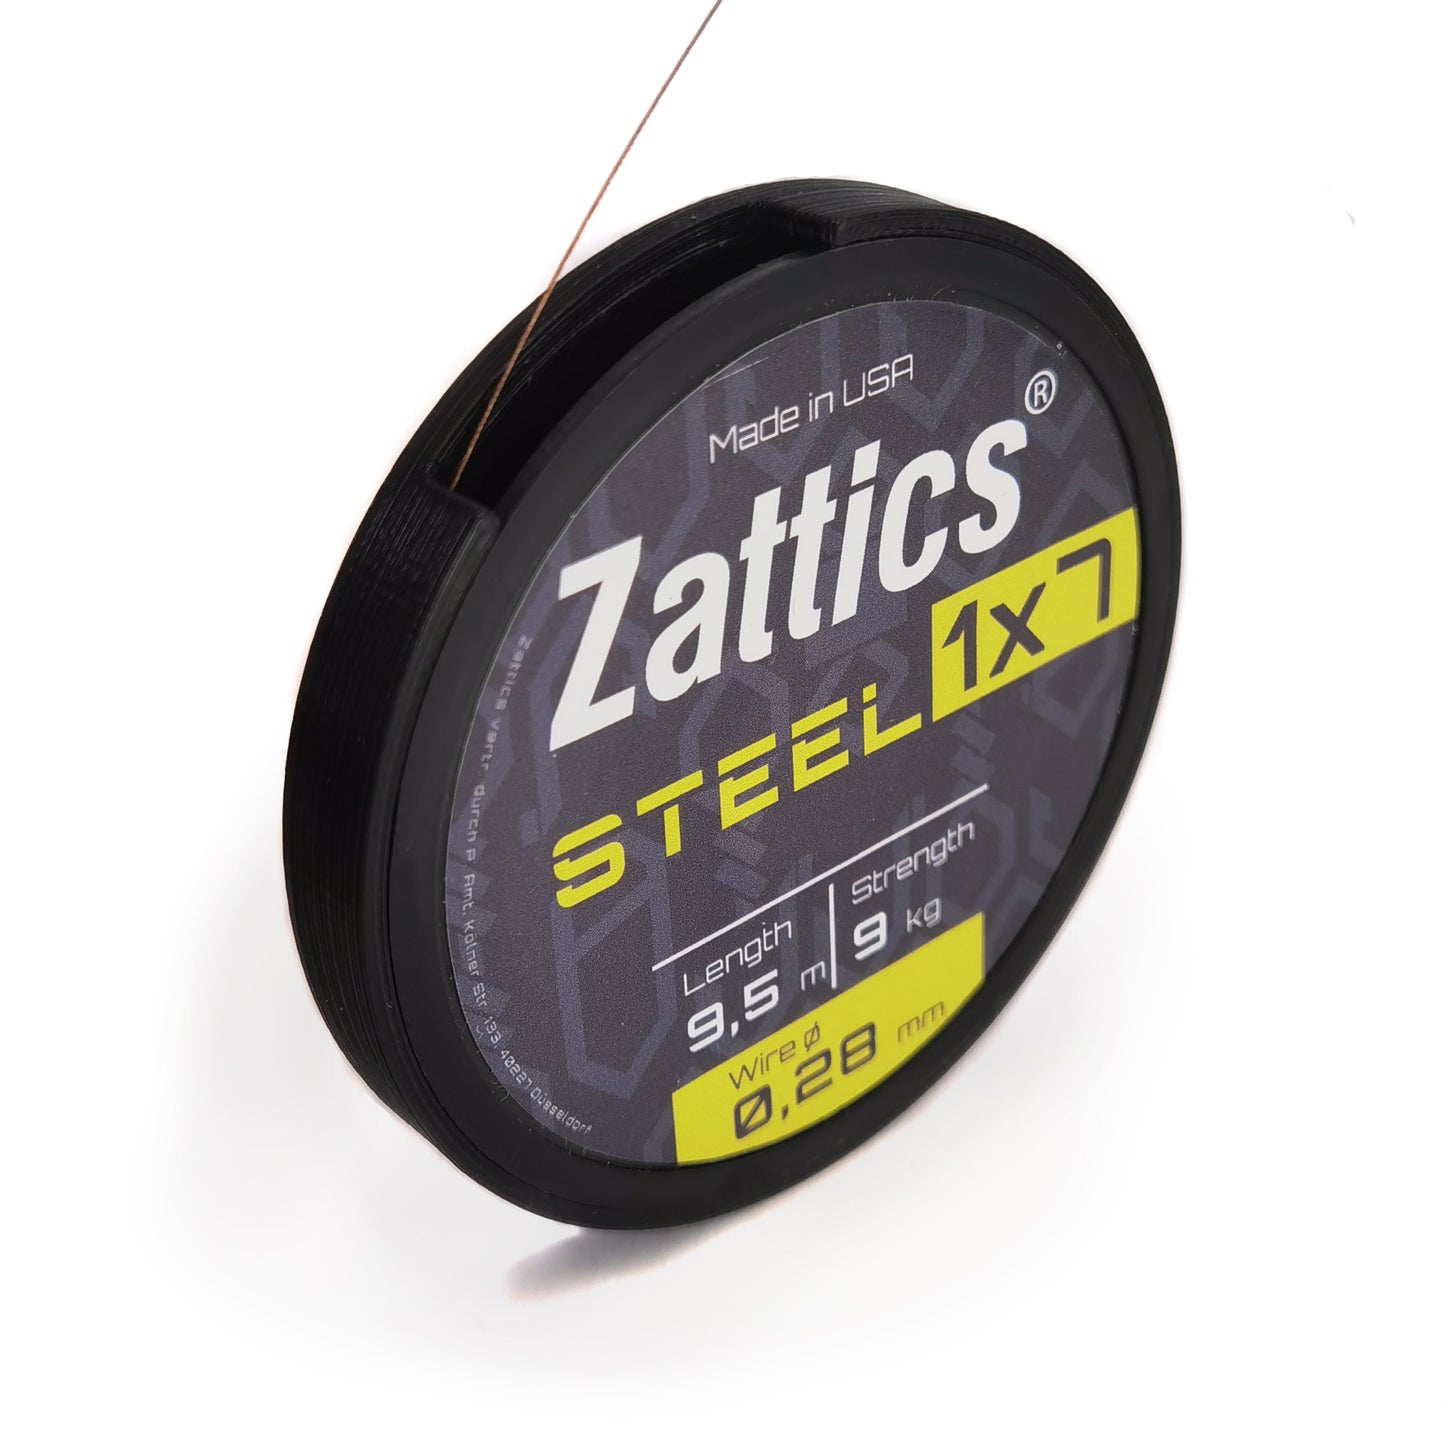 Zattics Raubfisch Stahlvorfach in 1x7 in 9kg für das Zanderangeln auf einer Spule